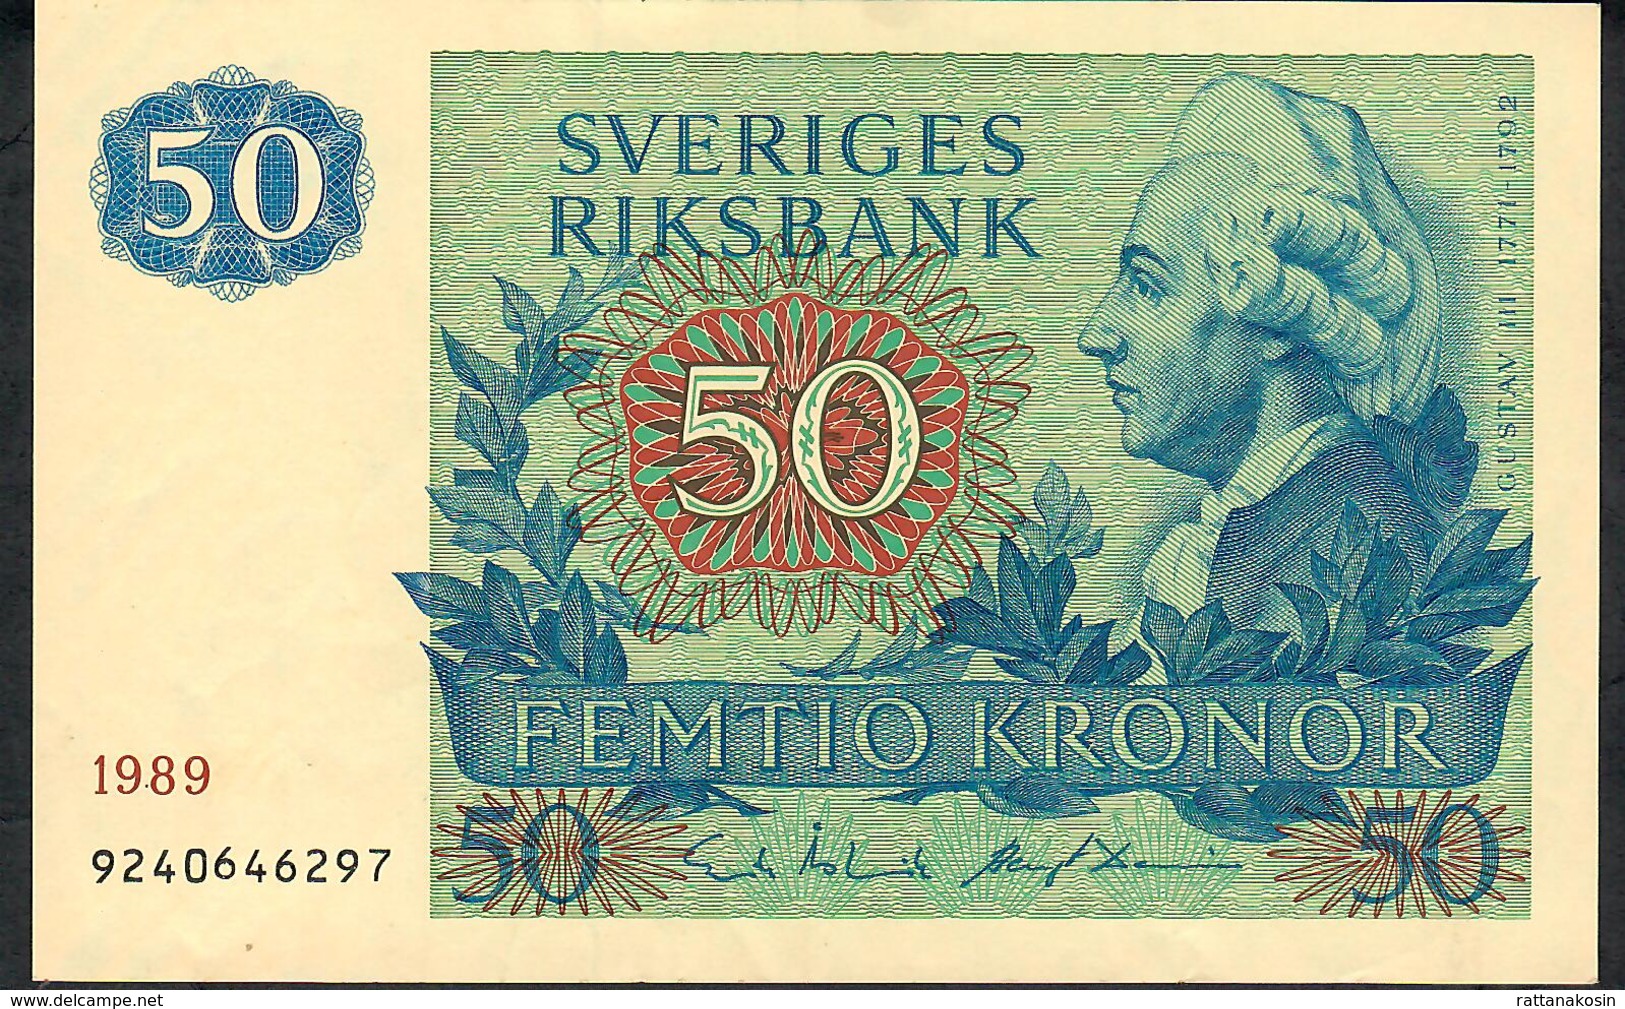 SWEDEN P53d 50 KRONOR 1989 #9240646297  XF - Schweden